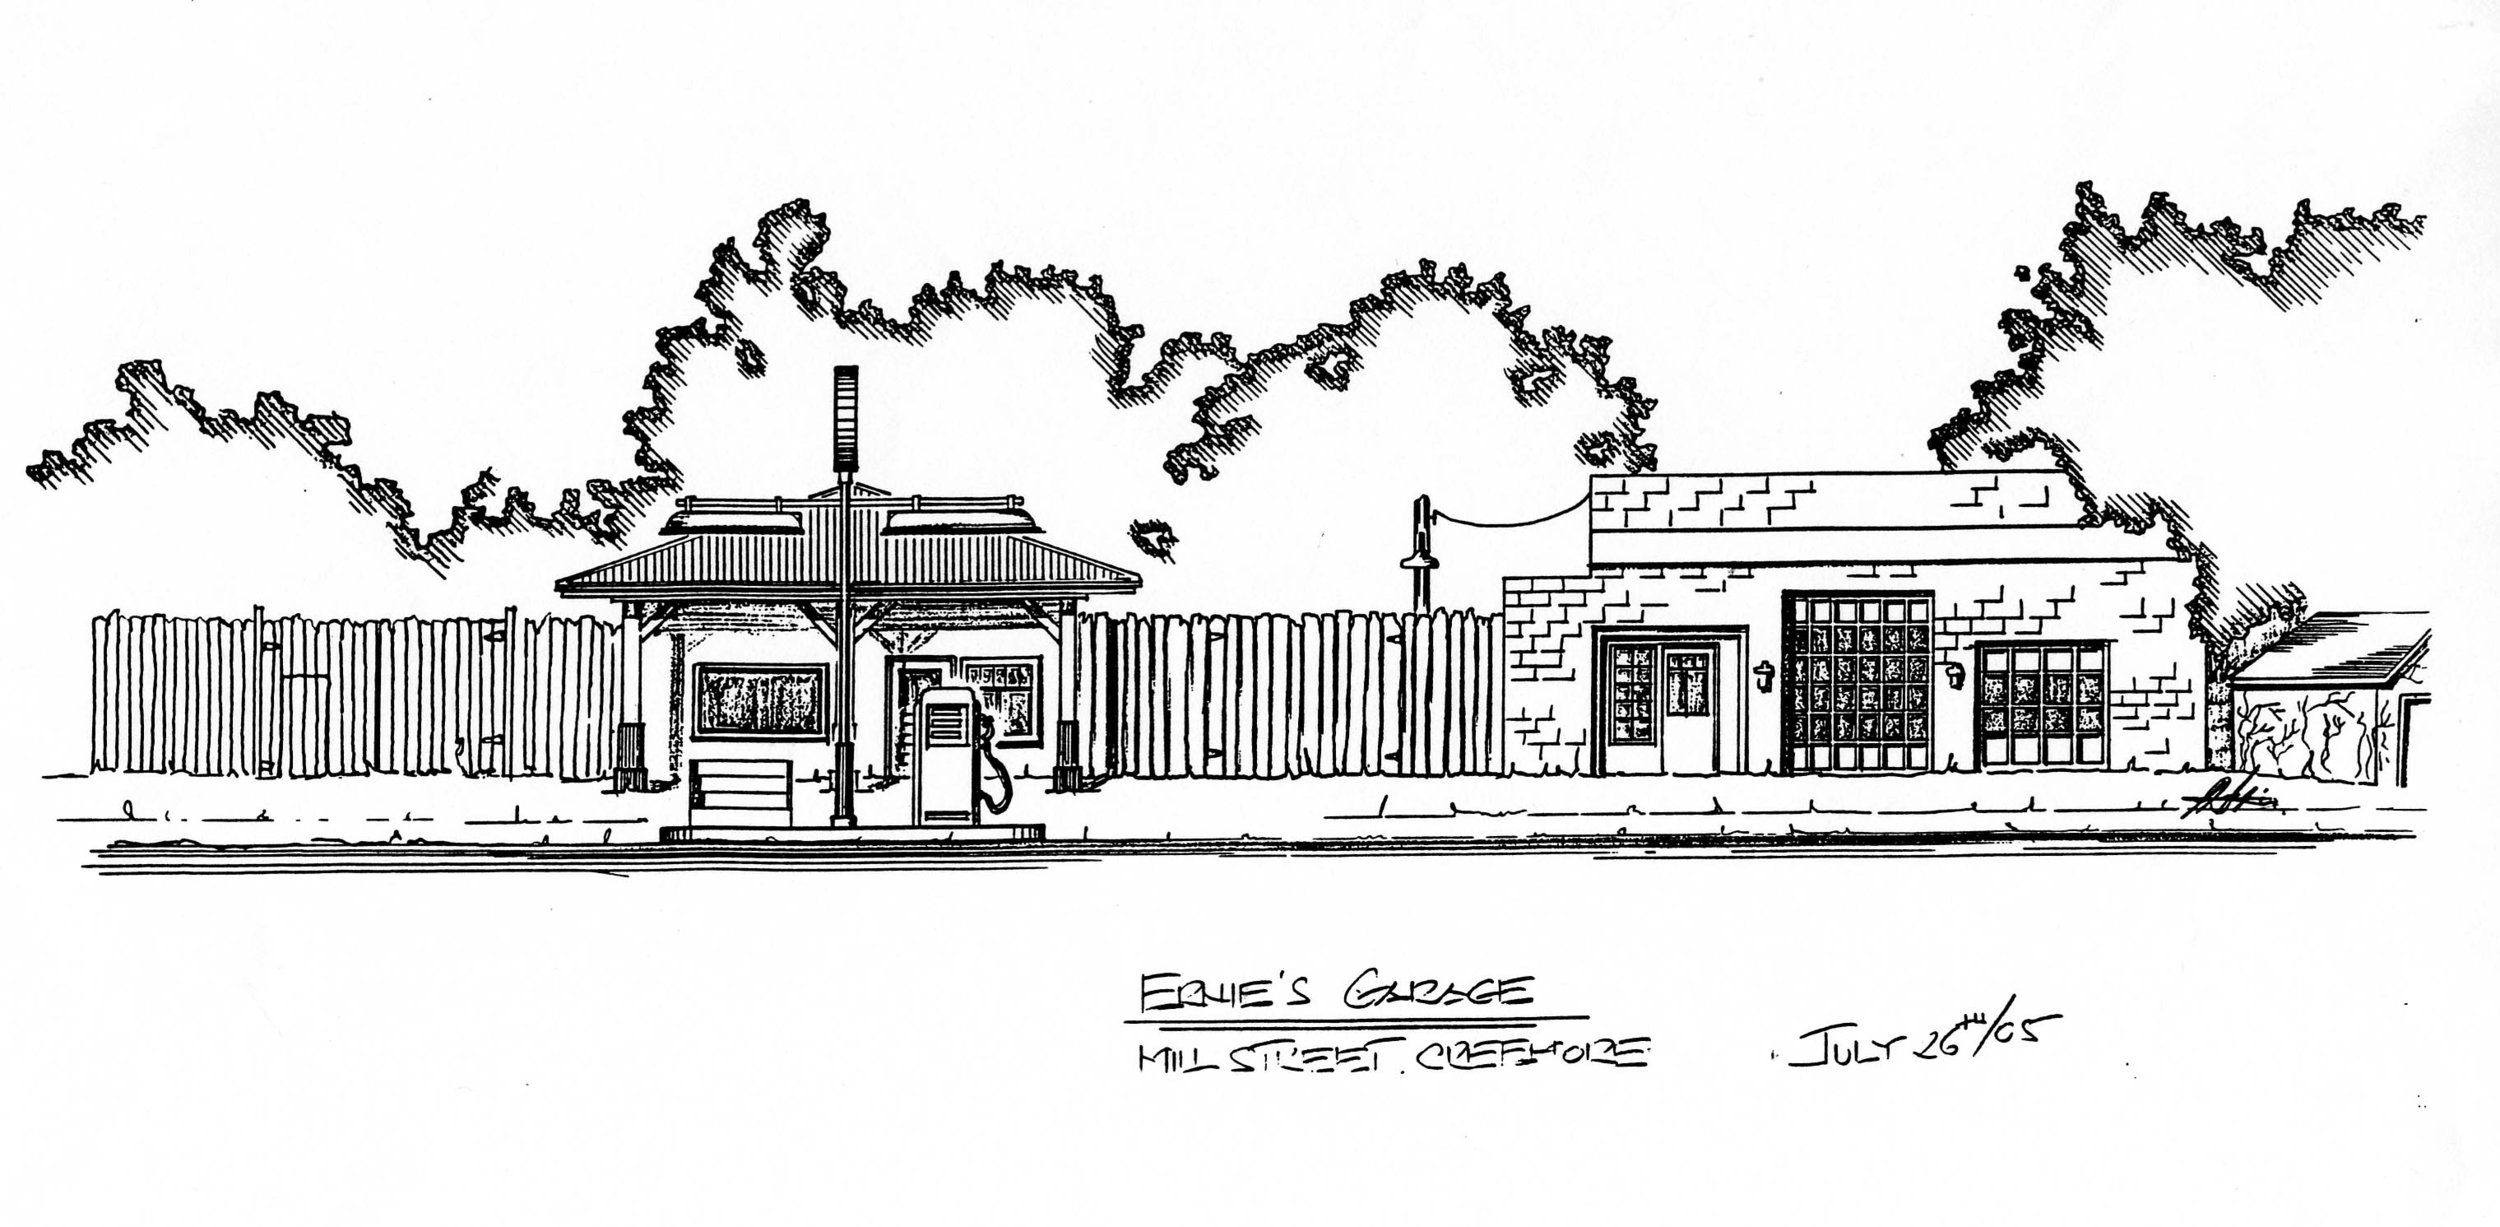 Ernie's-garage-concept-sketch.jpg